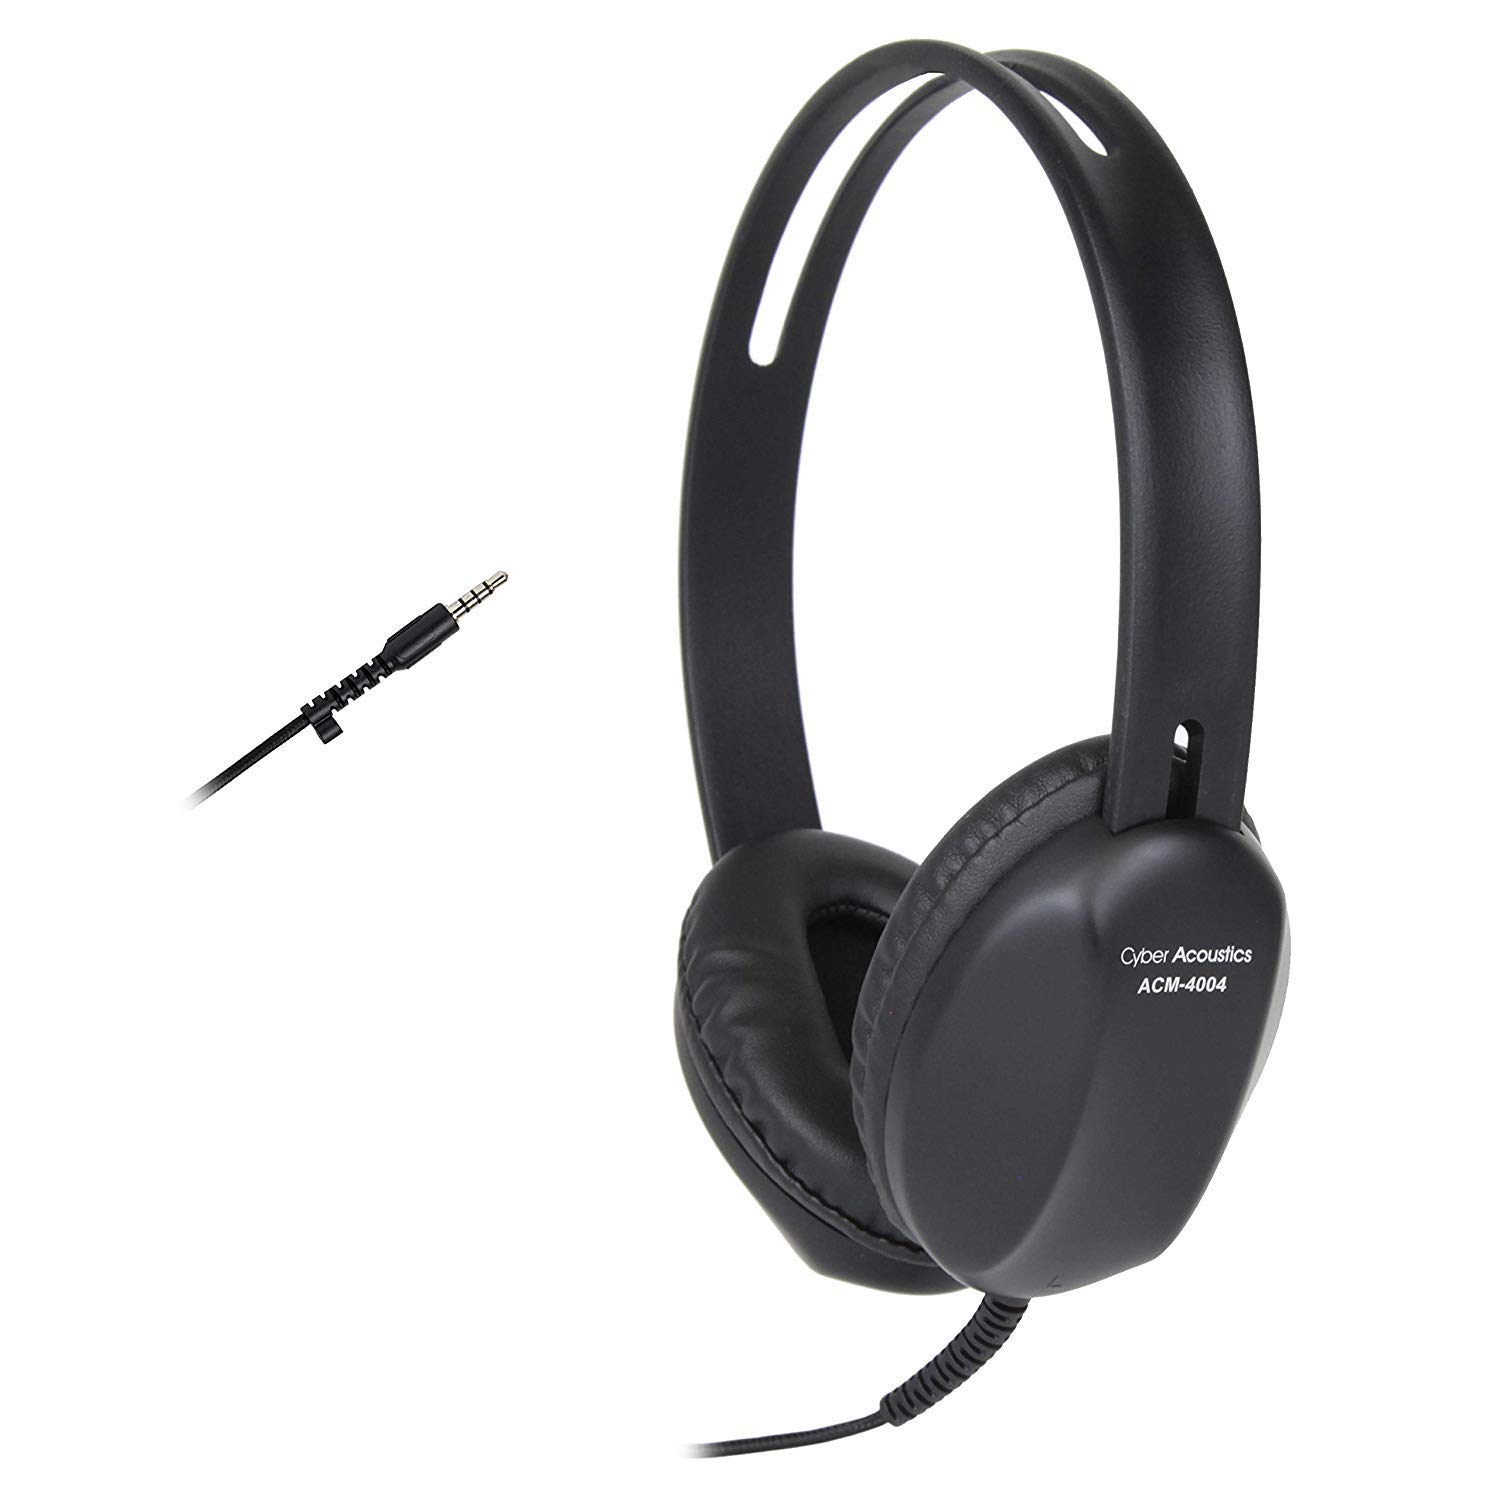 Cyber Acoustics Lightweight 3.5mm Headphones - 80 Pack ...